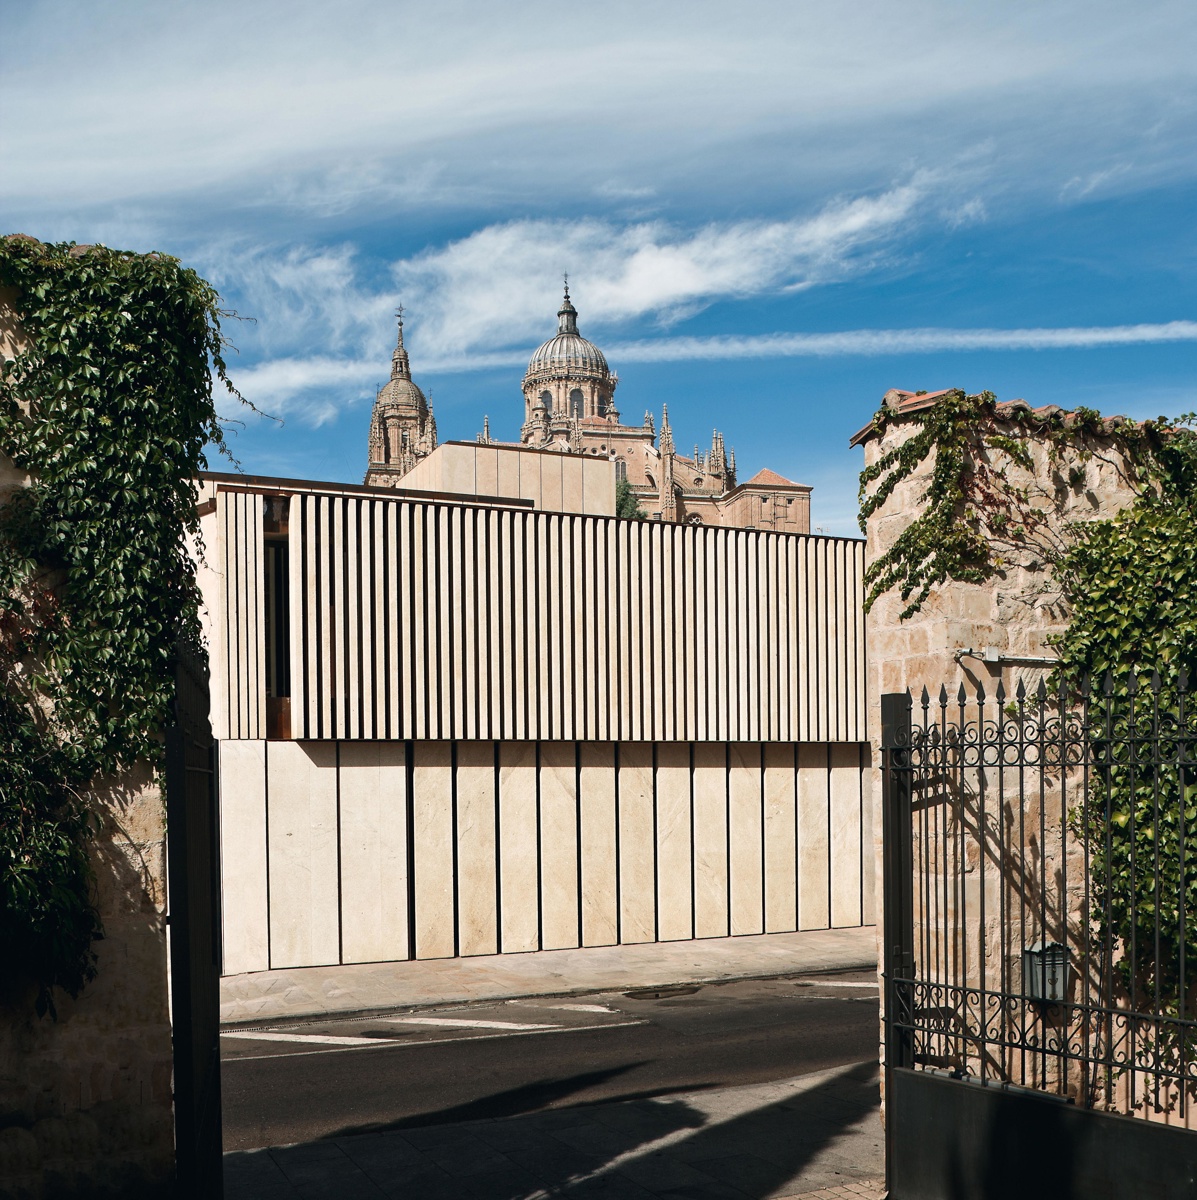  Colegio de Arquitectos y Fundación Cultural del COAL en Salamanca